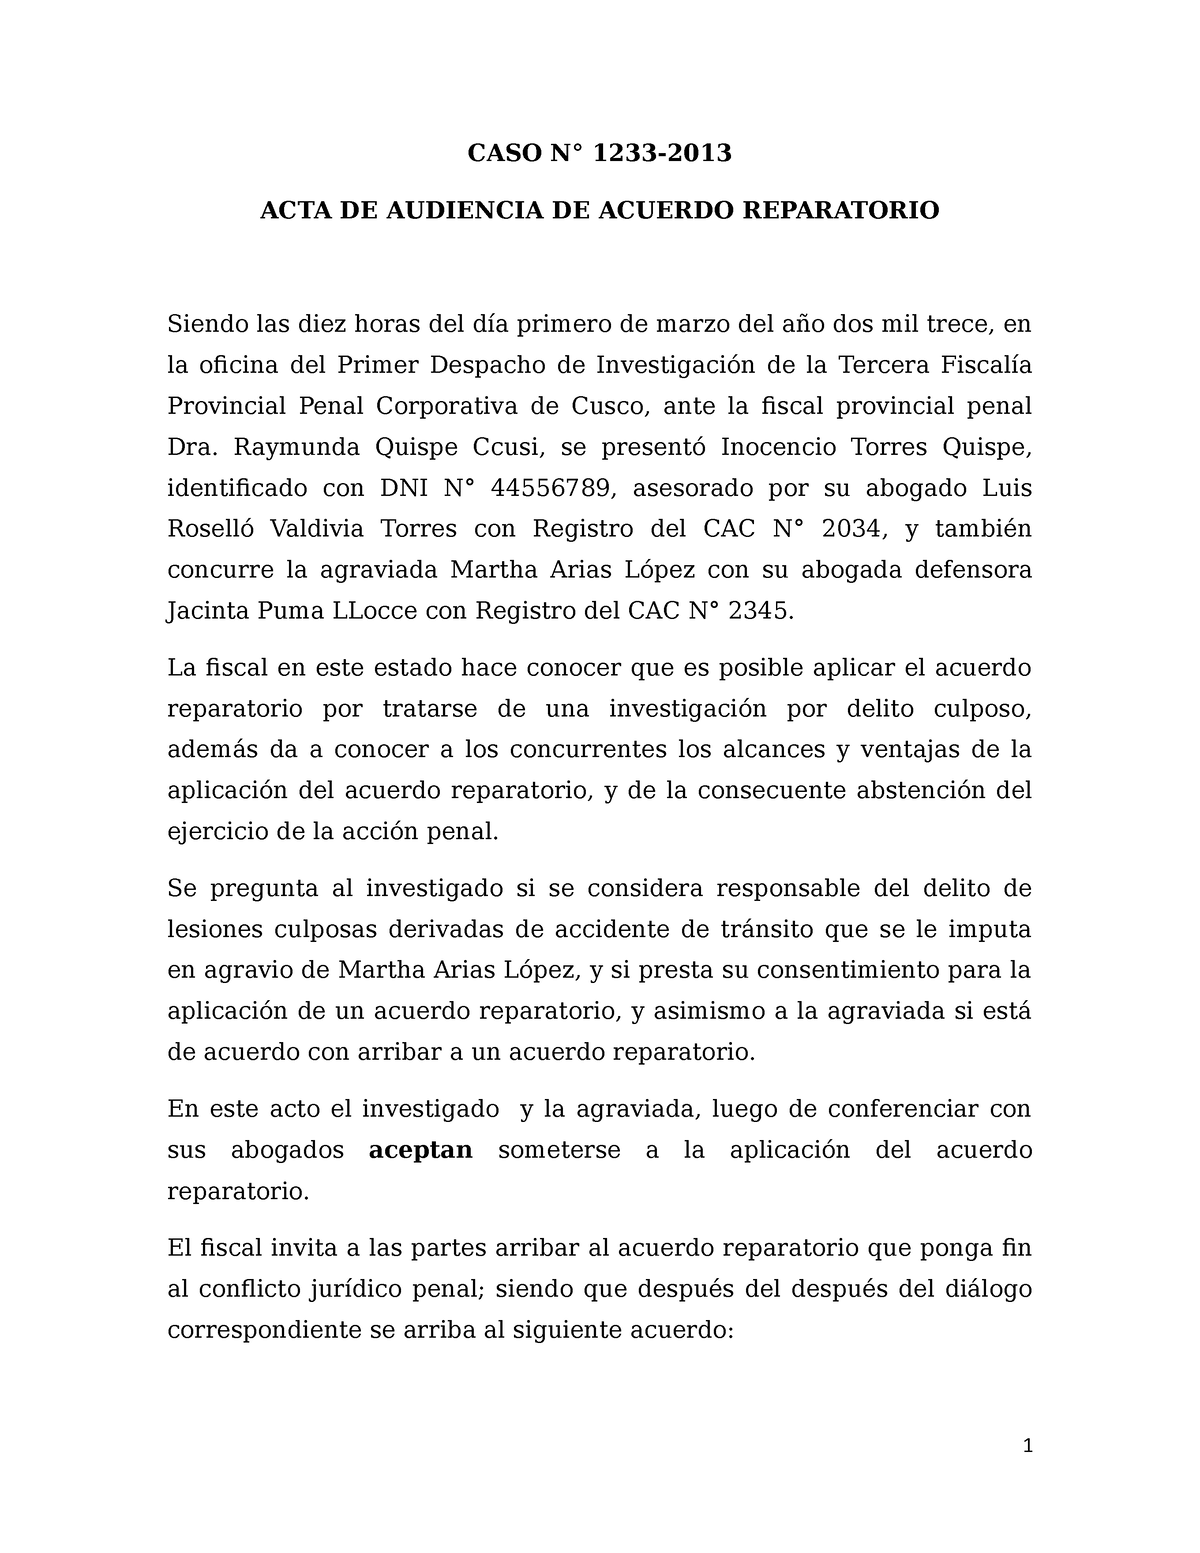 Modelo DE ACTA DE Acuerdo PARA LA Aplicacion DE Acuerdo Reparatorio - CASO  N° 1233- ACTA DE - Studocu